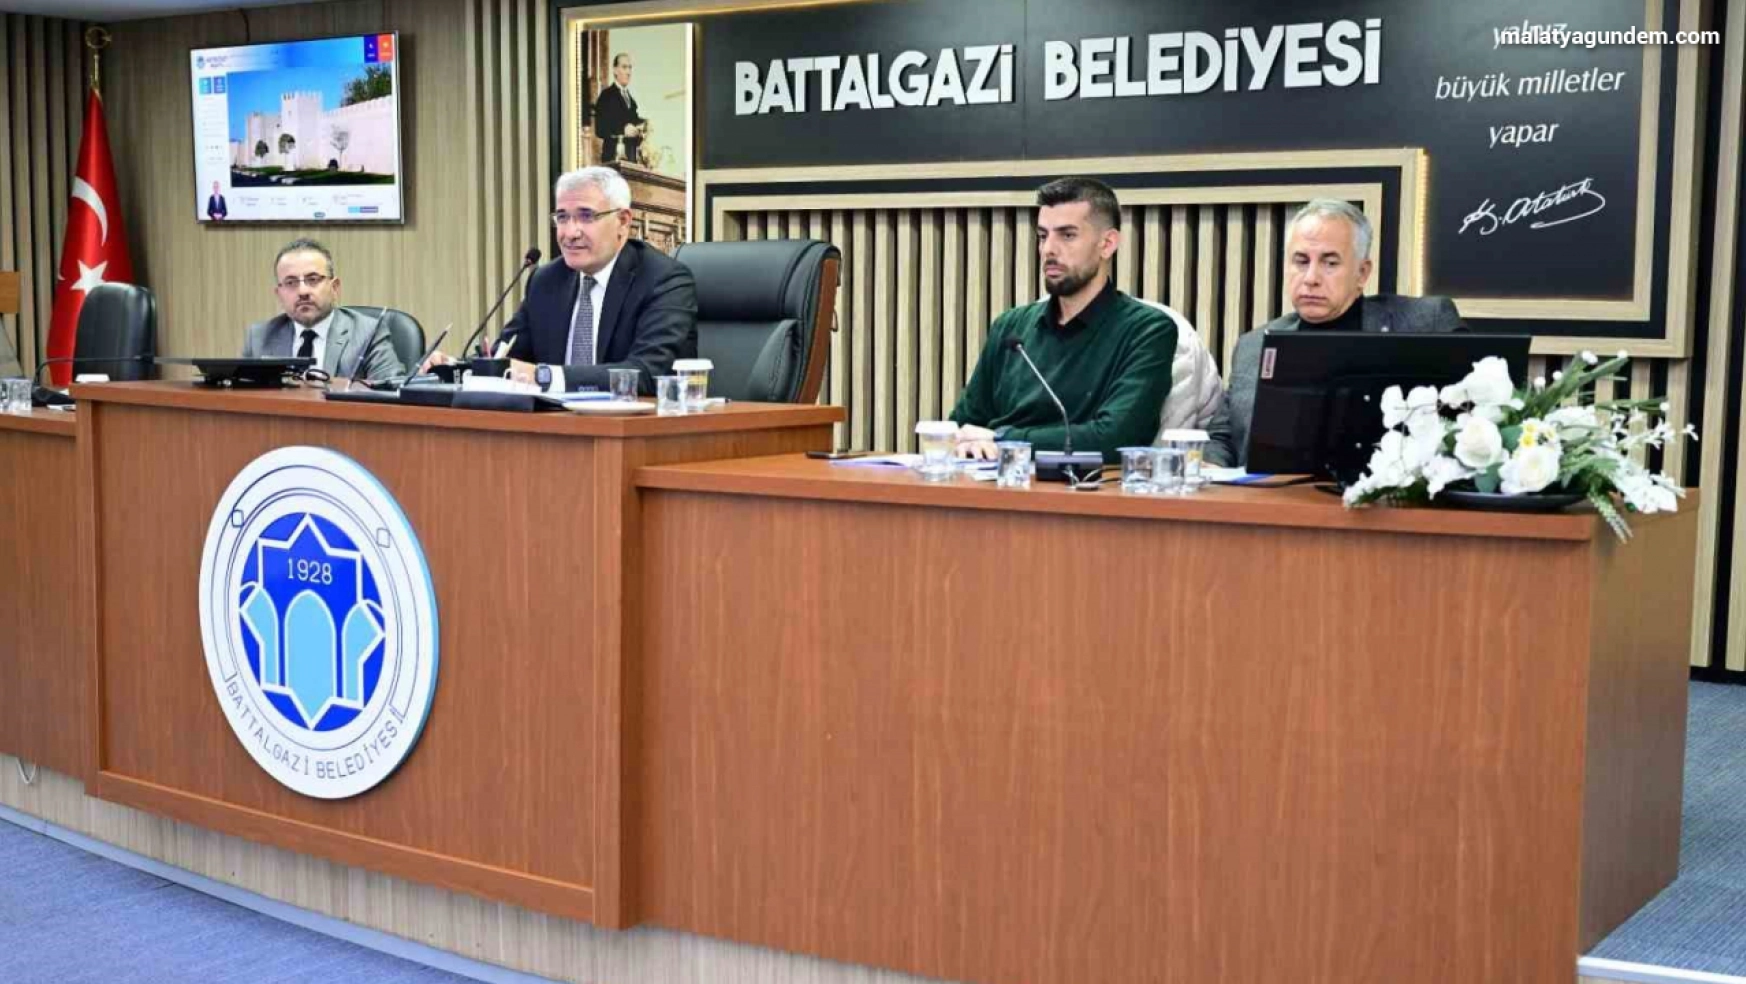 Battalgazi Belediye Meclisi, yılın ilk olağan meclis toplantısını tamamladı